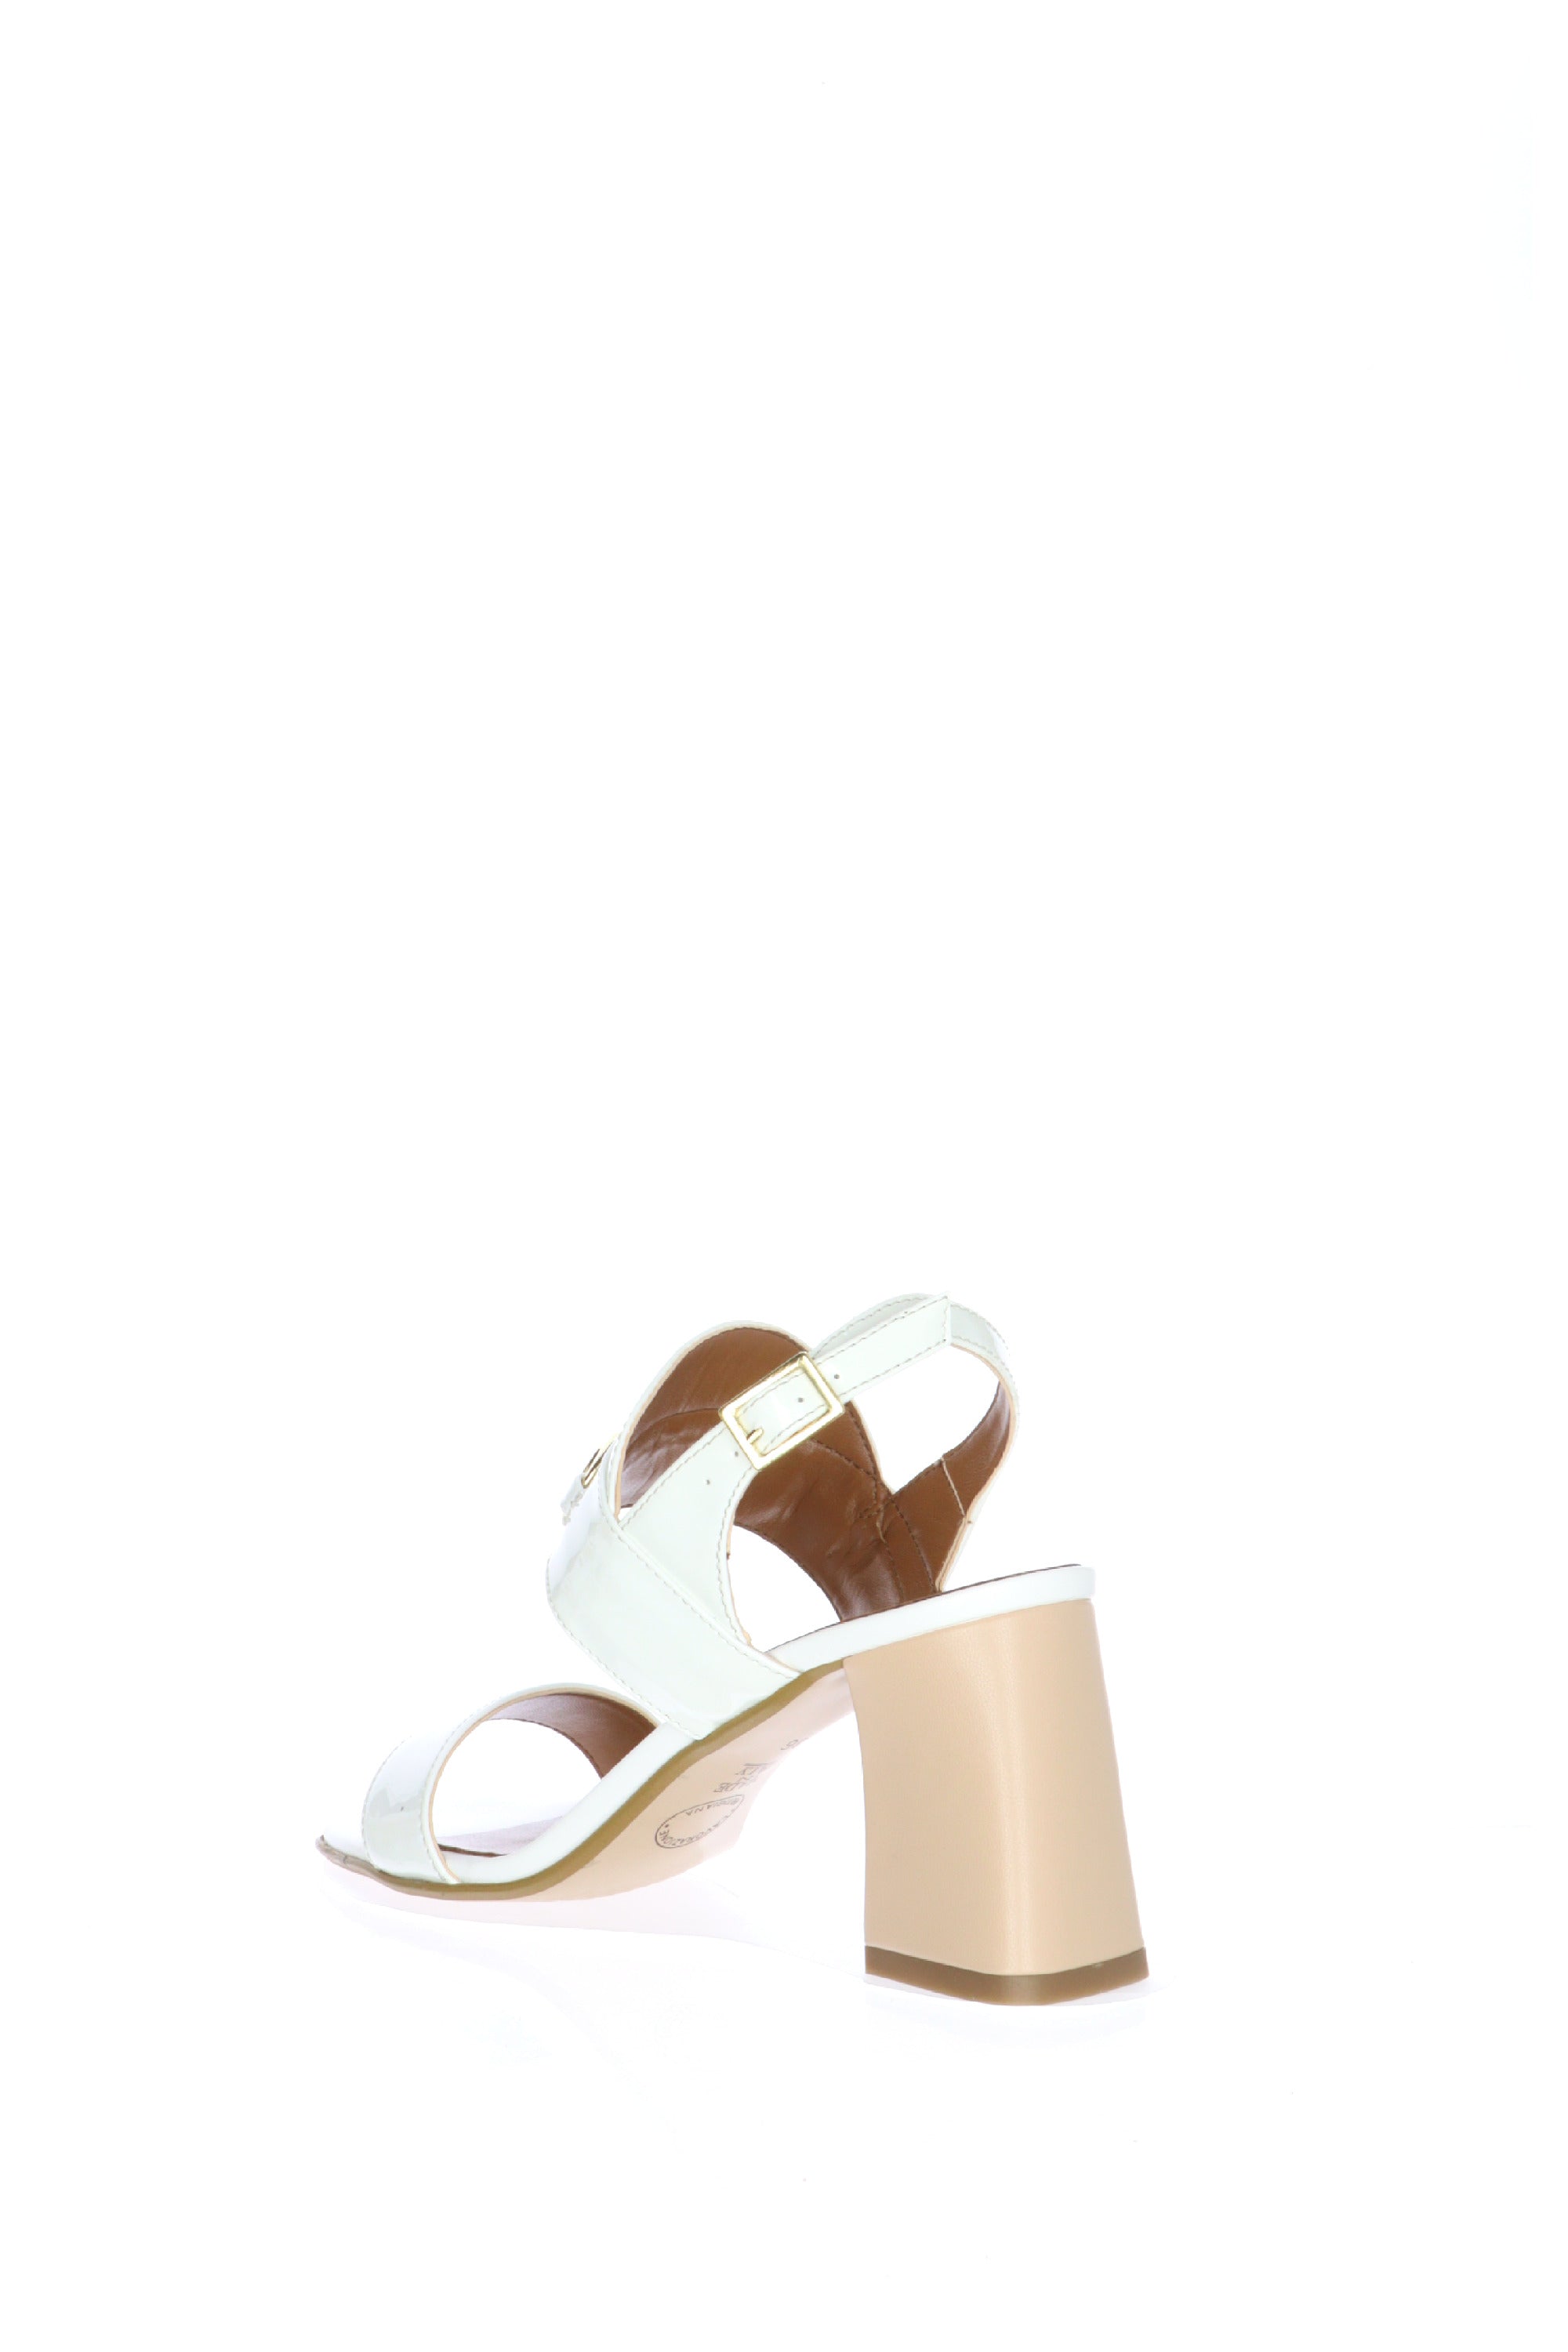 Sandalo due fasce nero o  bianco  con accessorio catena Cinzia Soft